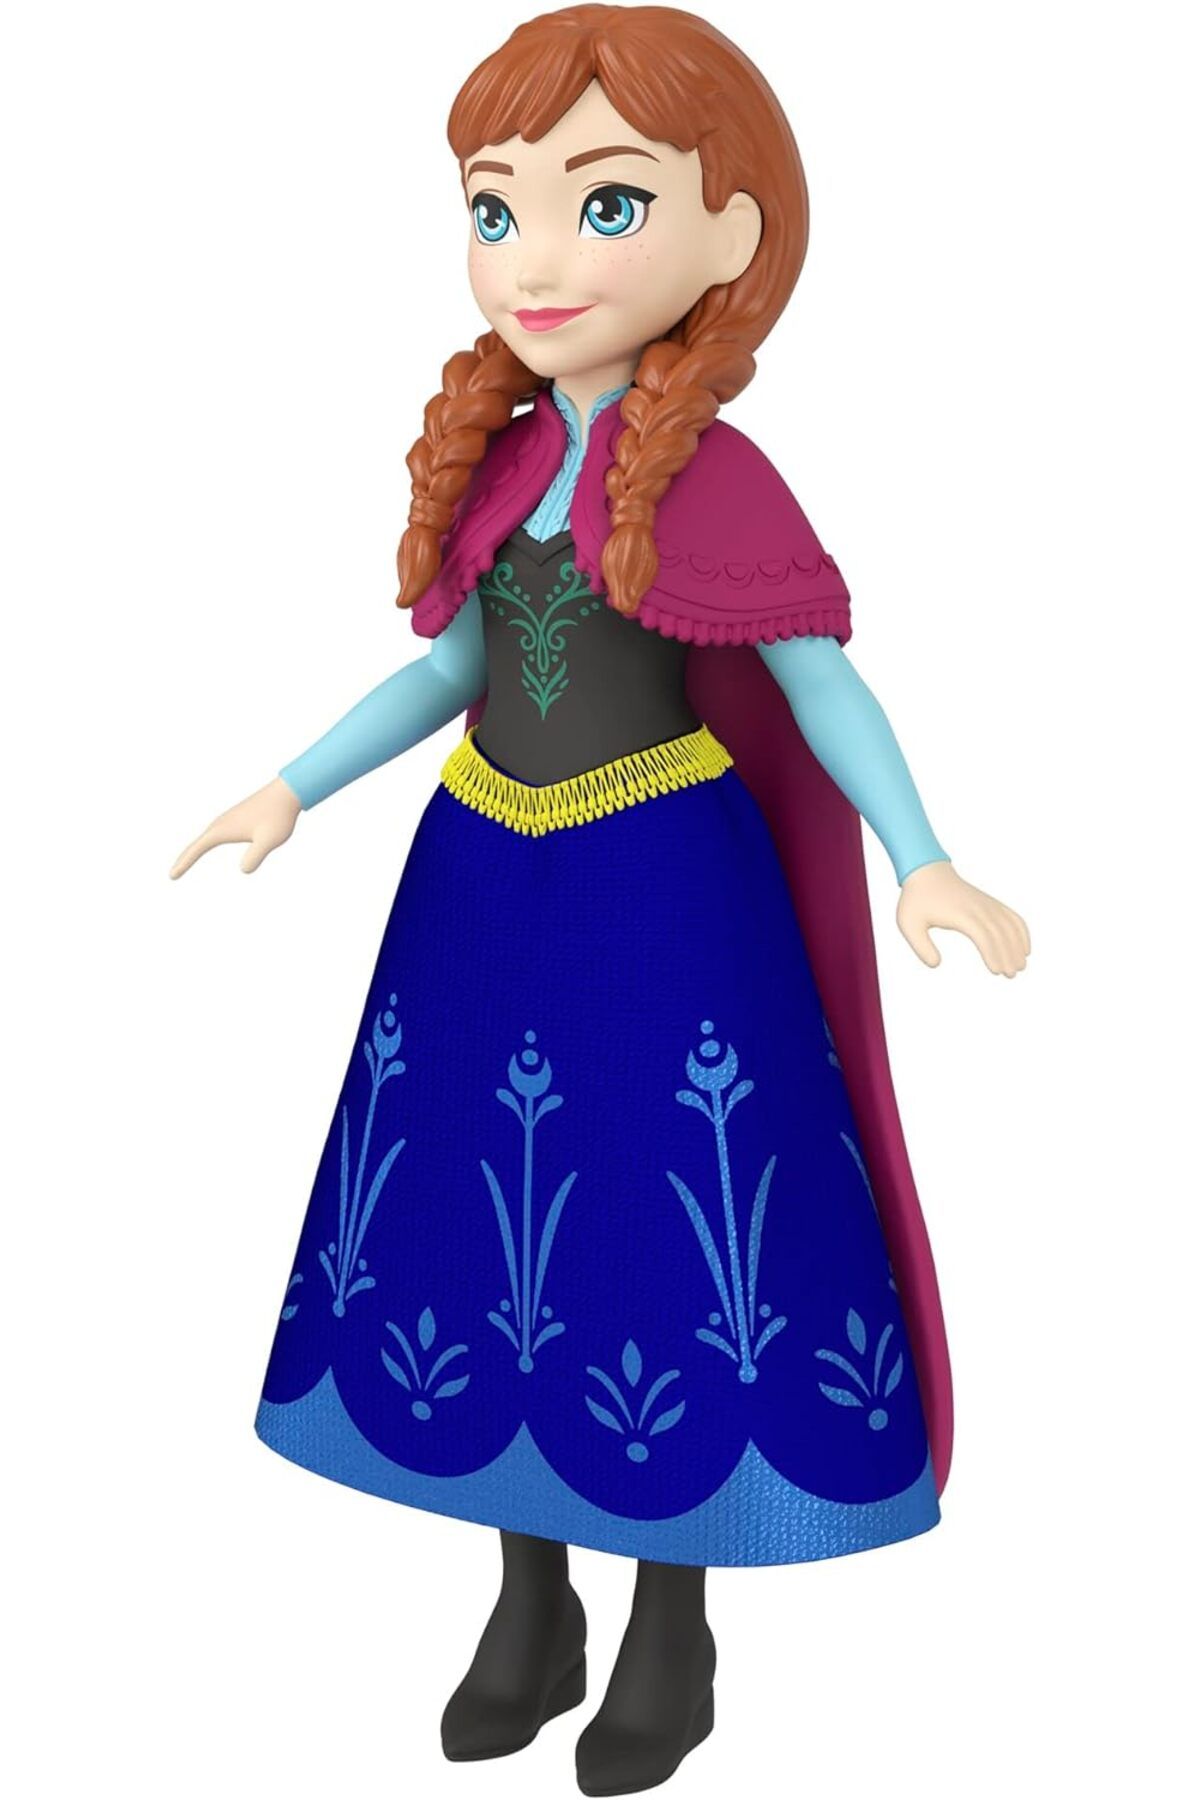 Frozen Disney Karlar Ülkesi Elsa ve Anna Mini Bebekler Hlw97-Hdp46